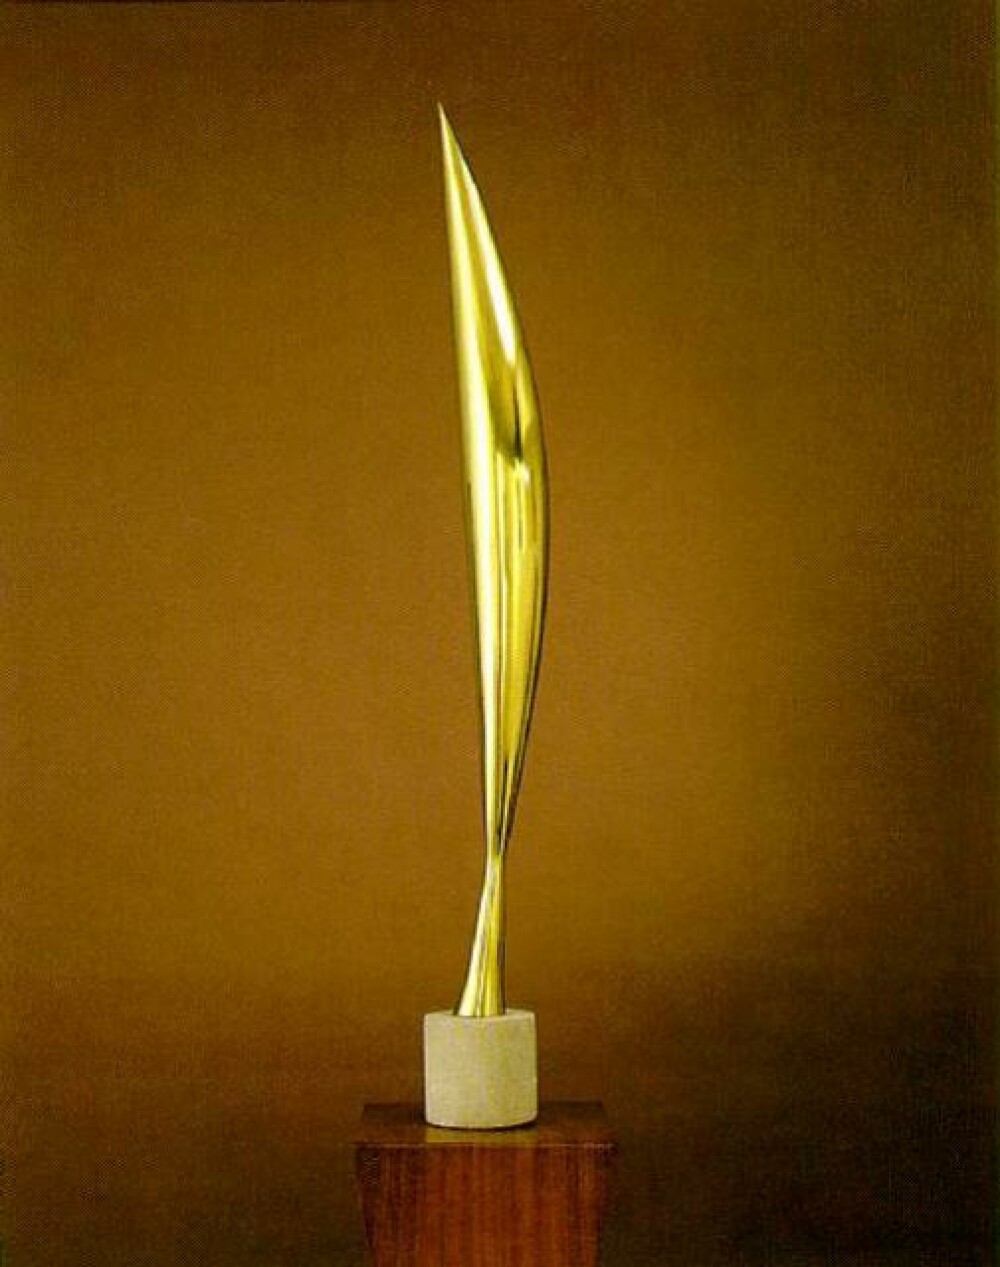 Constantin Brancusi, artistul care a revolutionat sculptura, s-ar putea intoarce, in sfarsit, acasa - Imaginea 5